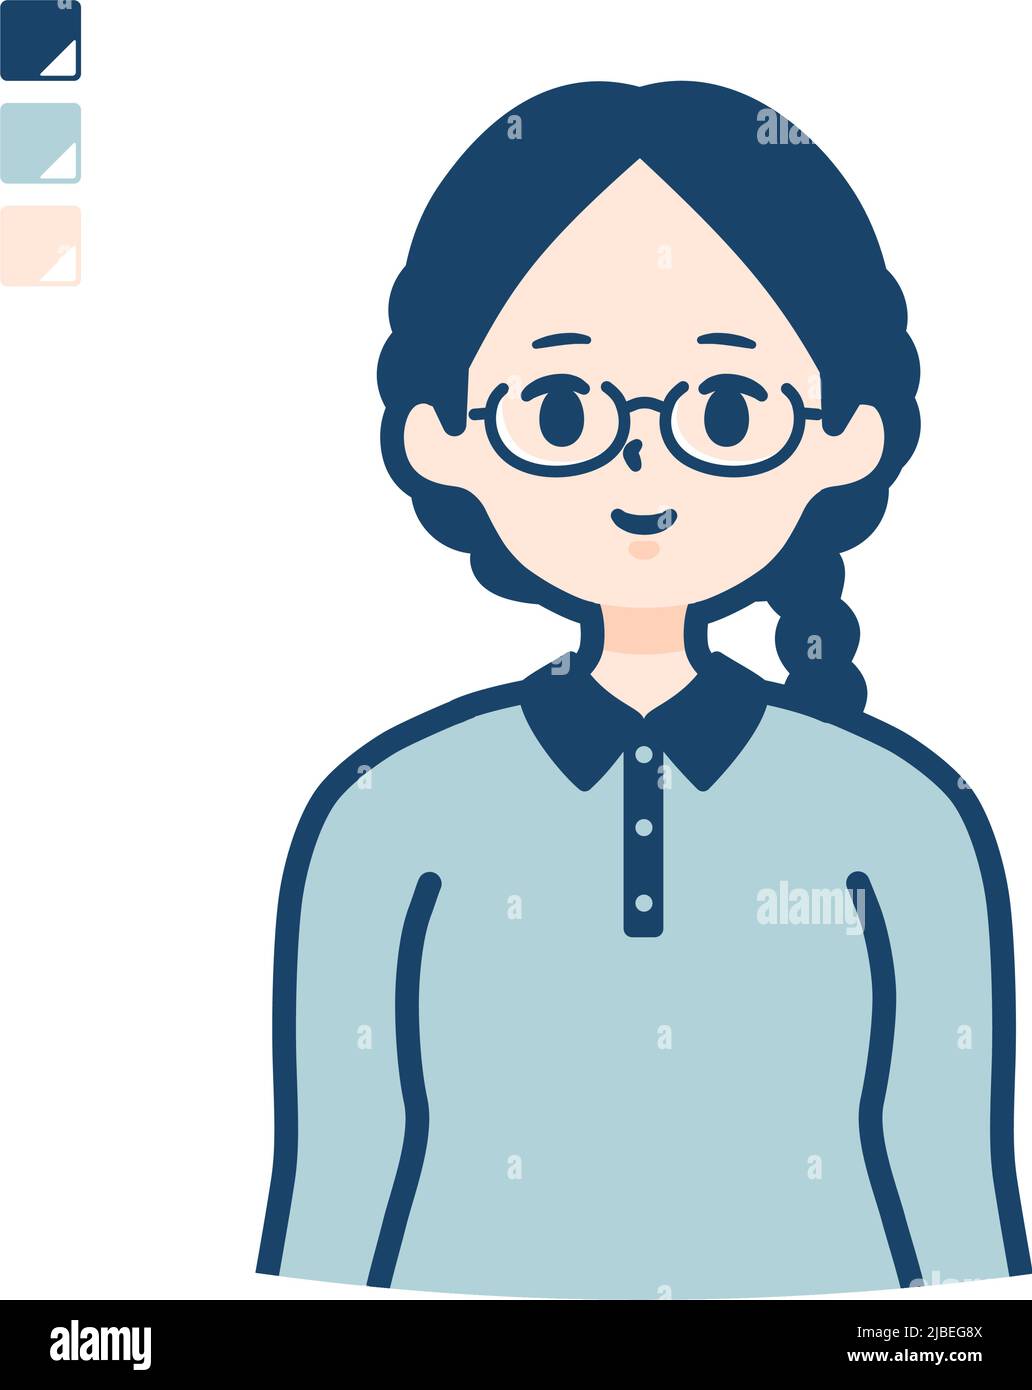 Eine junge Frau mit Brille mit Oberkörperbildern.Es ist Vektorgrafik, so dass es einfach zu bearbeiten ist. Stock Vektor